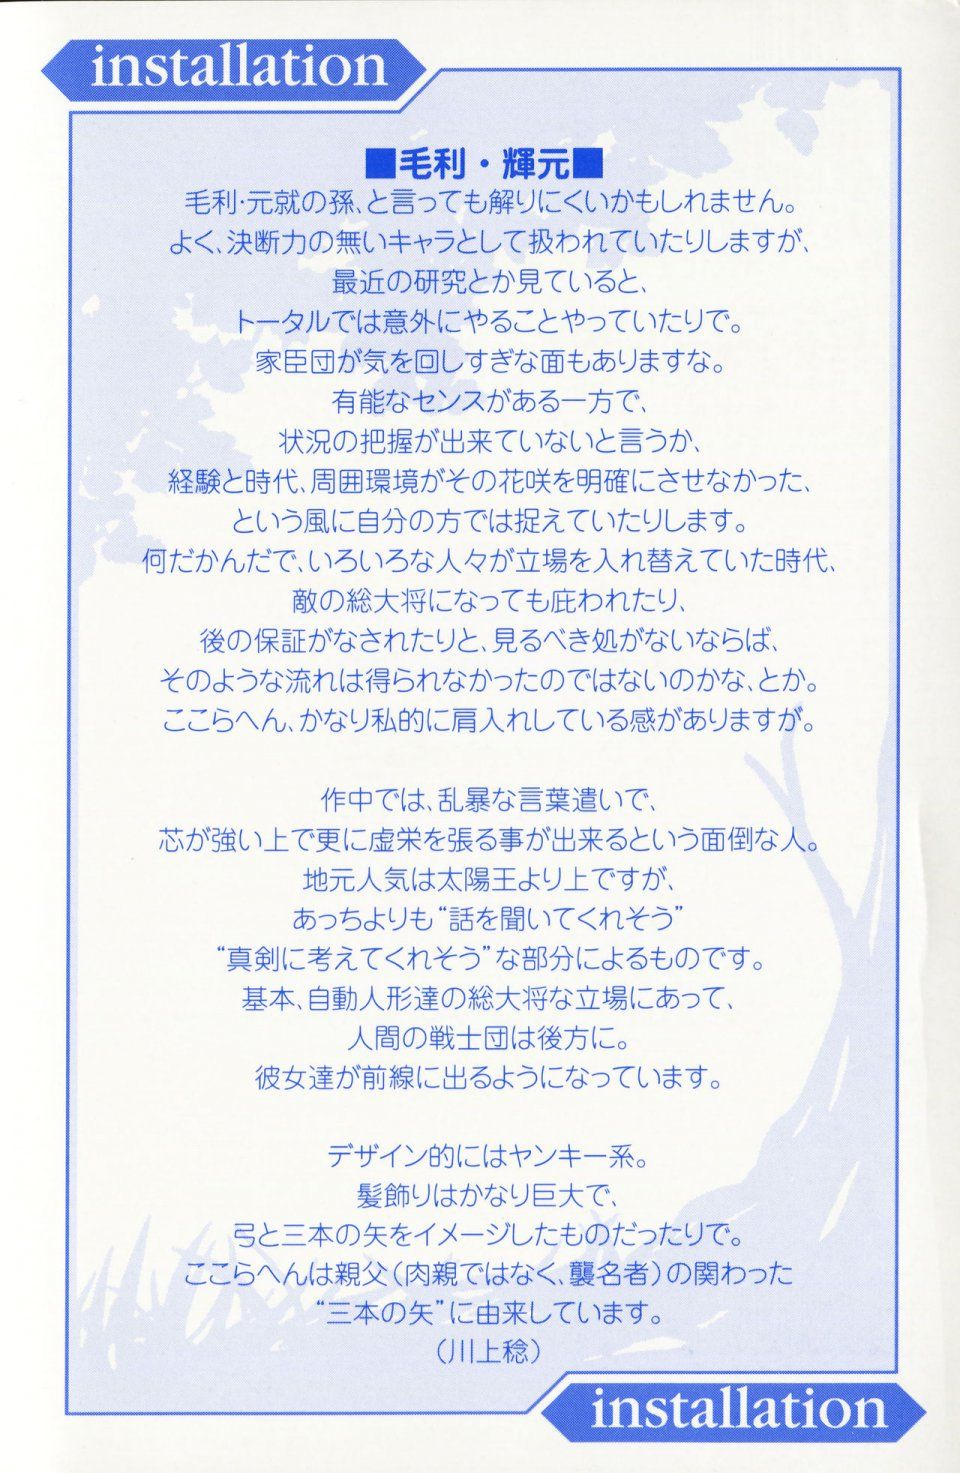 Kyoukai Senjou no Horizon LN Vol 13(6A) - Photo #4